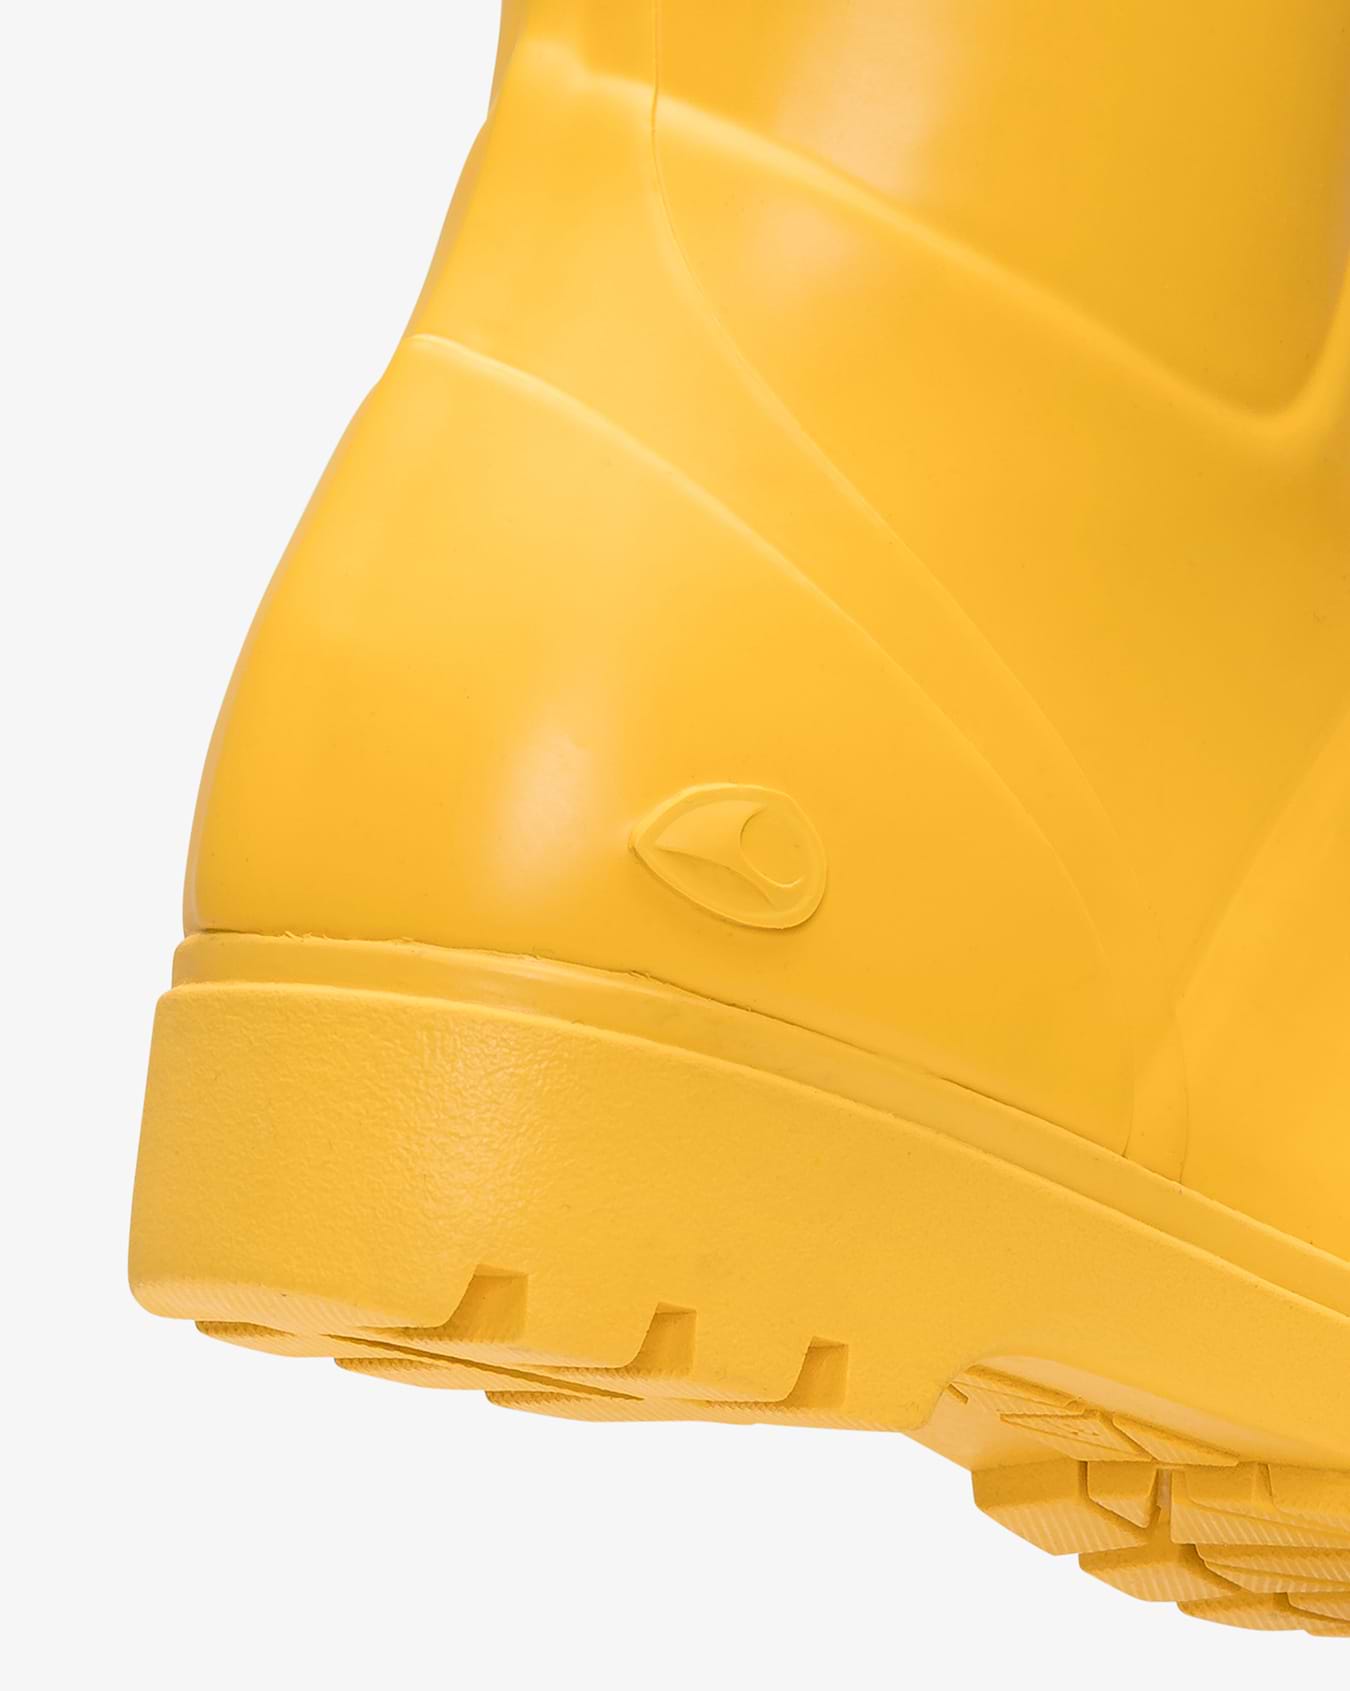 Mira Yellow Rubber Boot